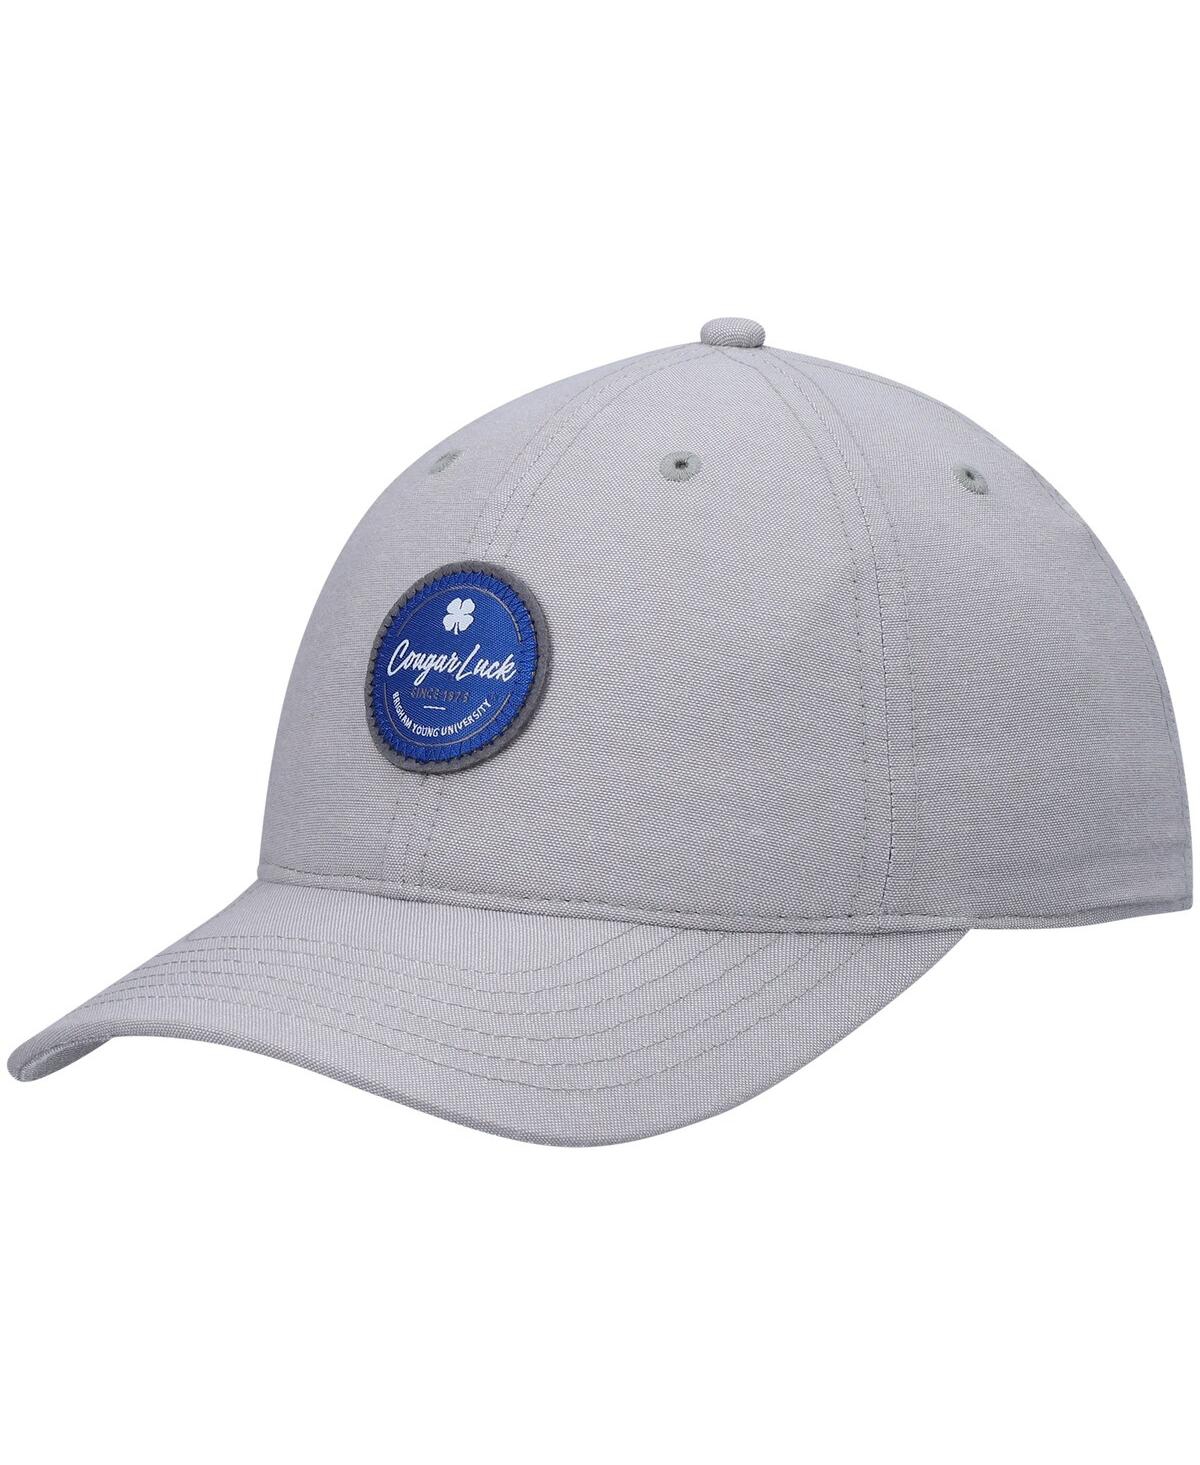 Shop Black Clover Men's Gray Byu Cougars Oxford Circle Adjustable Hat